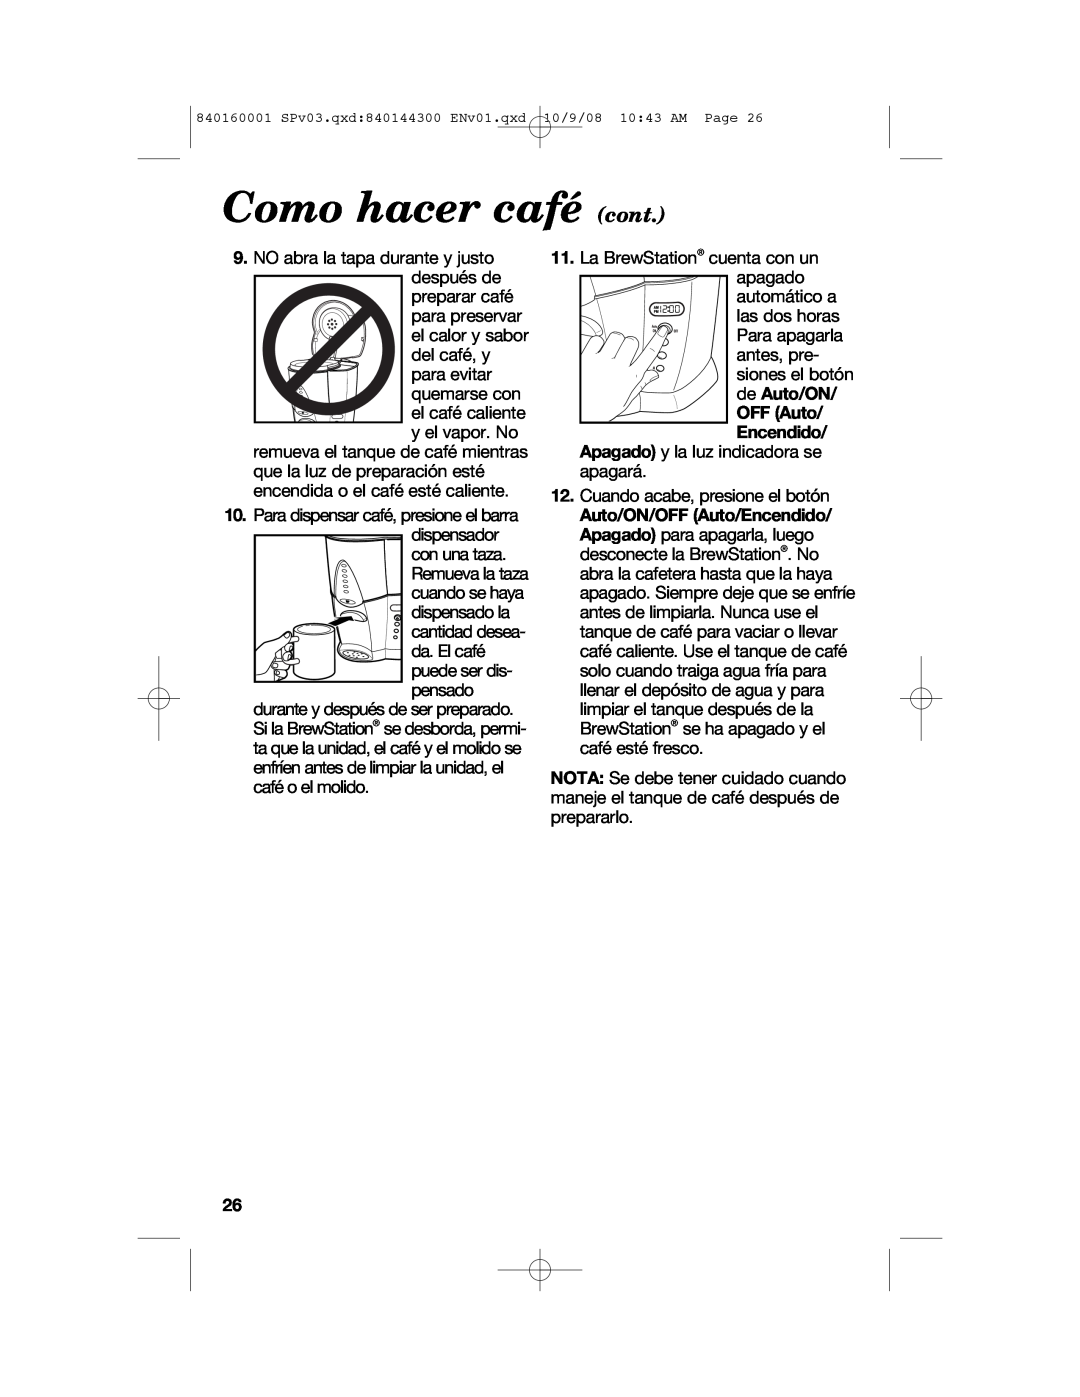 Hamilton Beach 47214 manual Como hacer café cont 